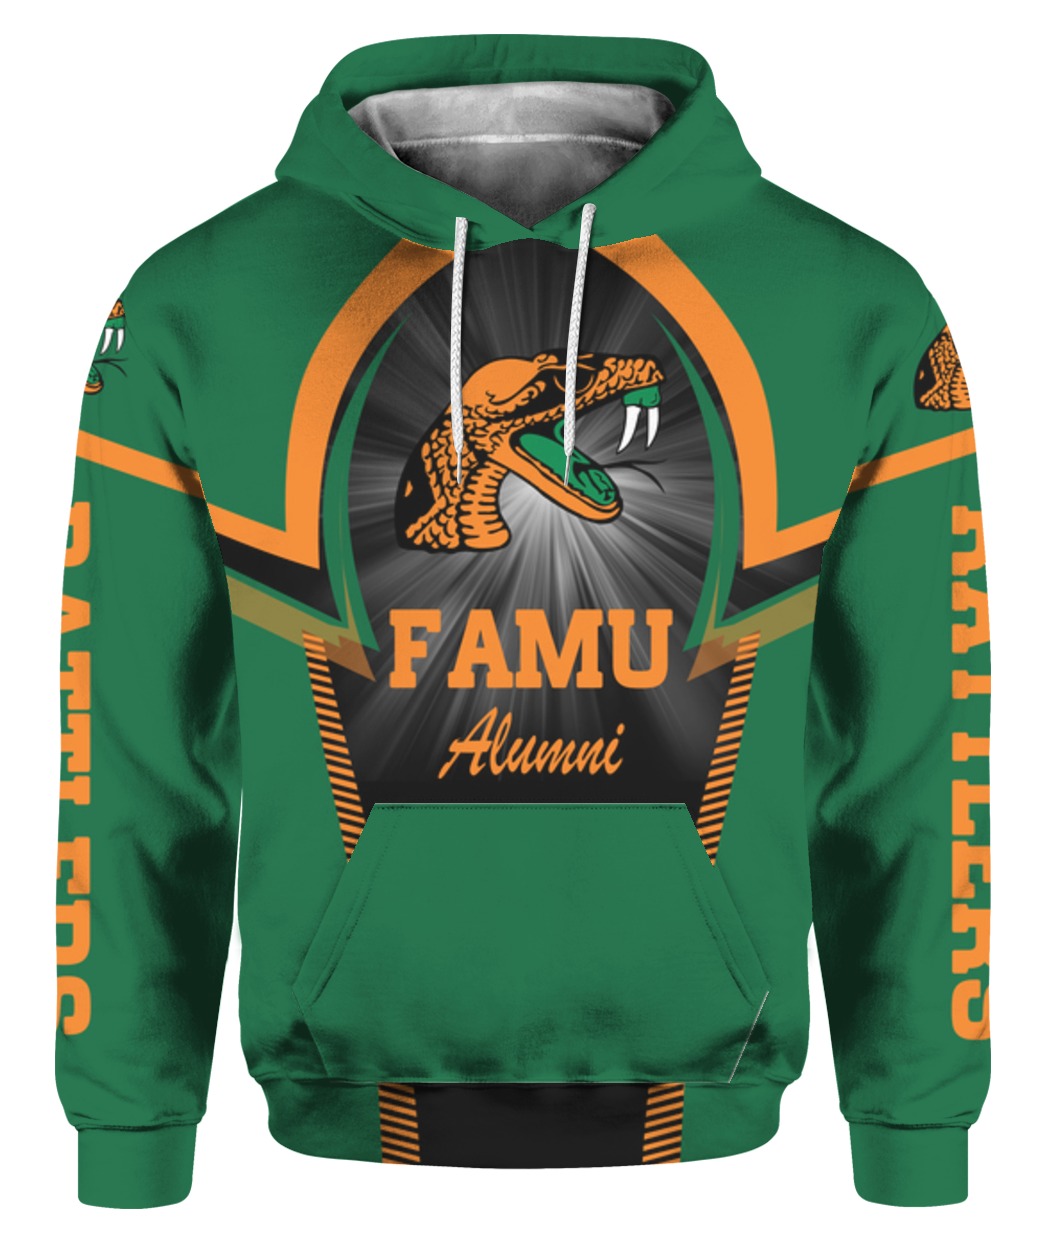 Famu alumni full printing hoodie